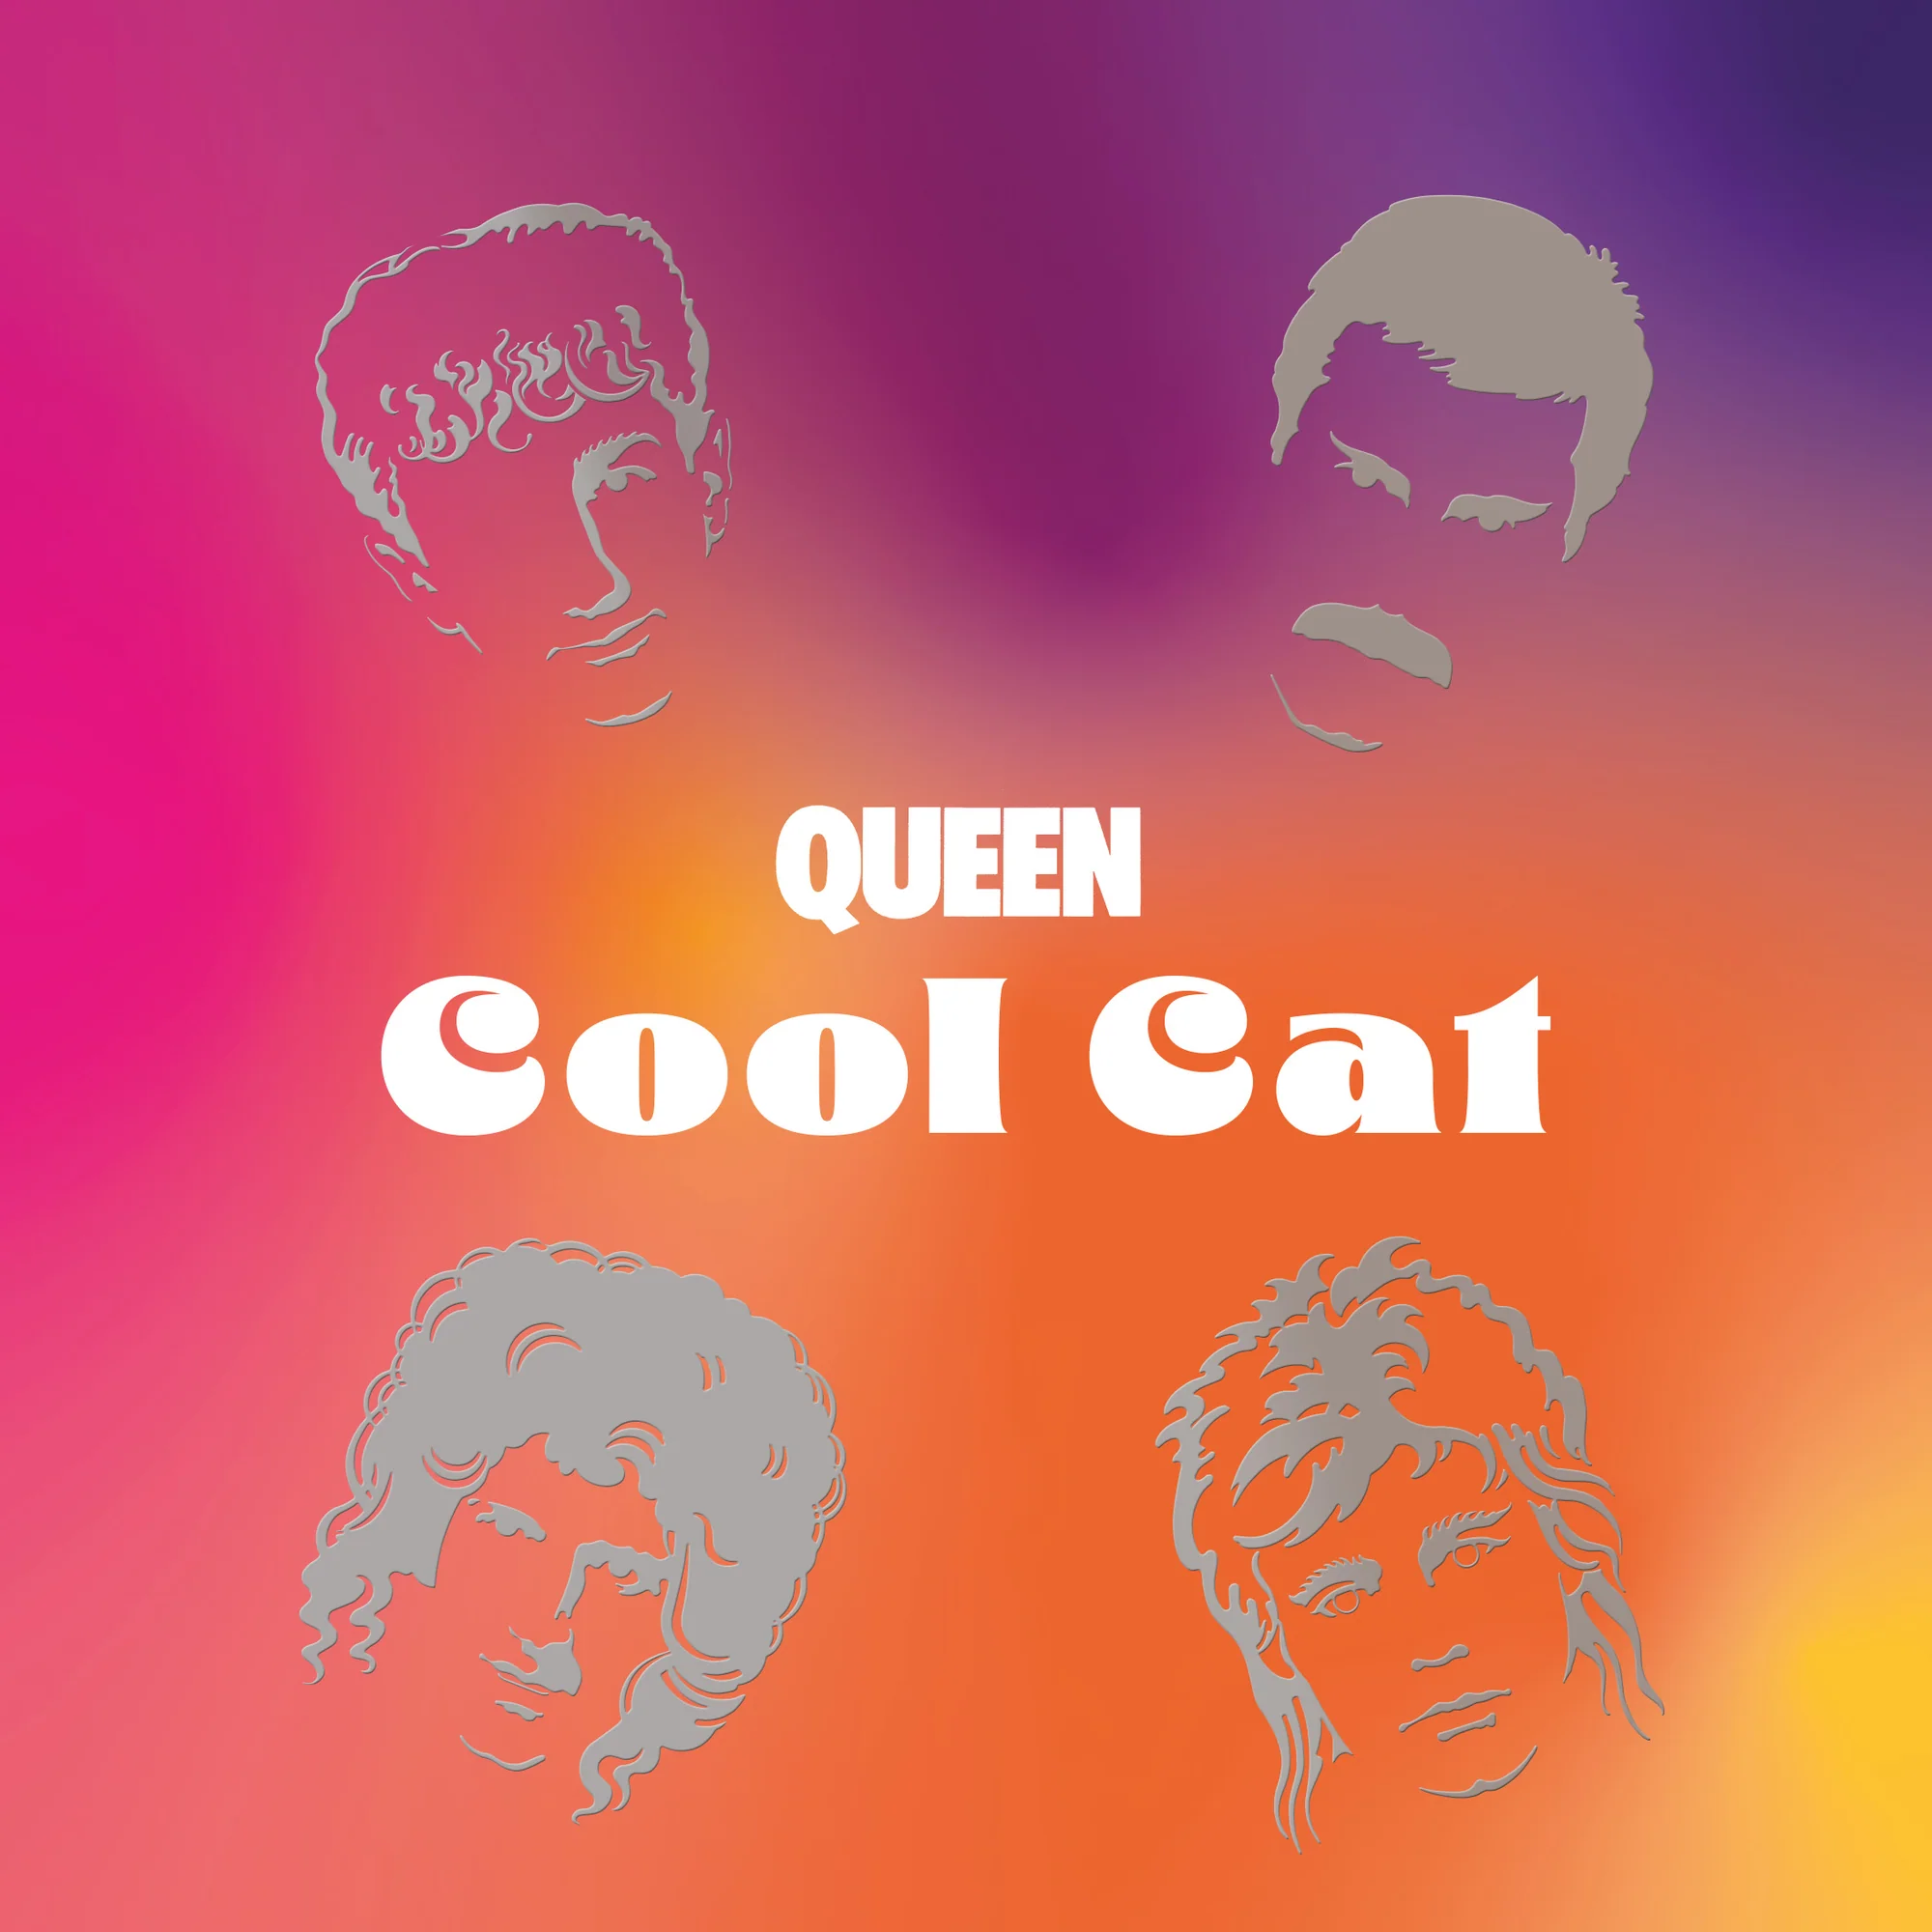 Queen Cool Cat Vinilo 7 aqueenofmagic